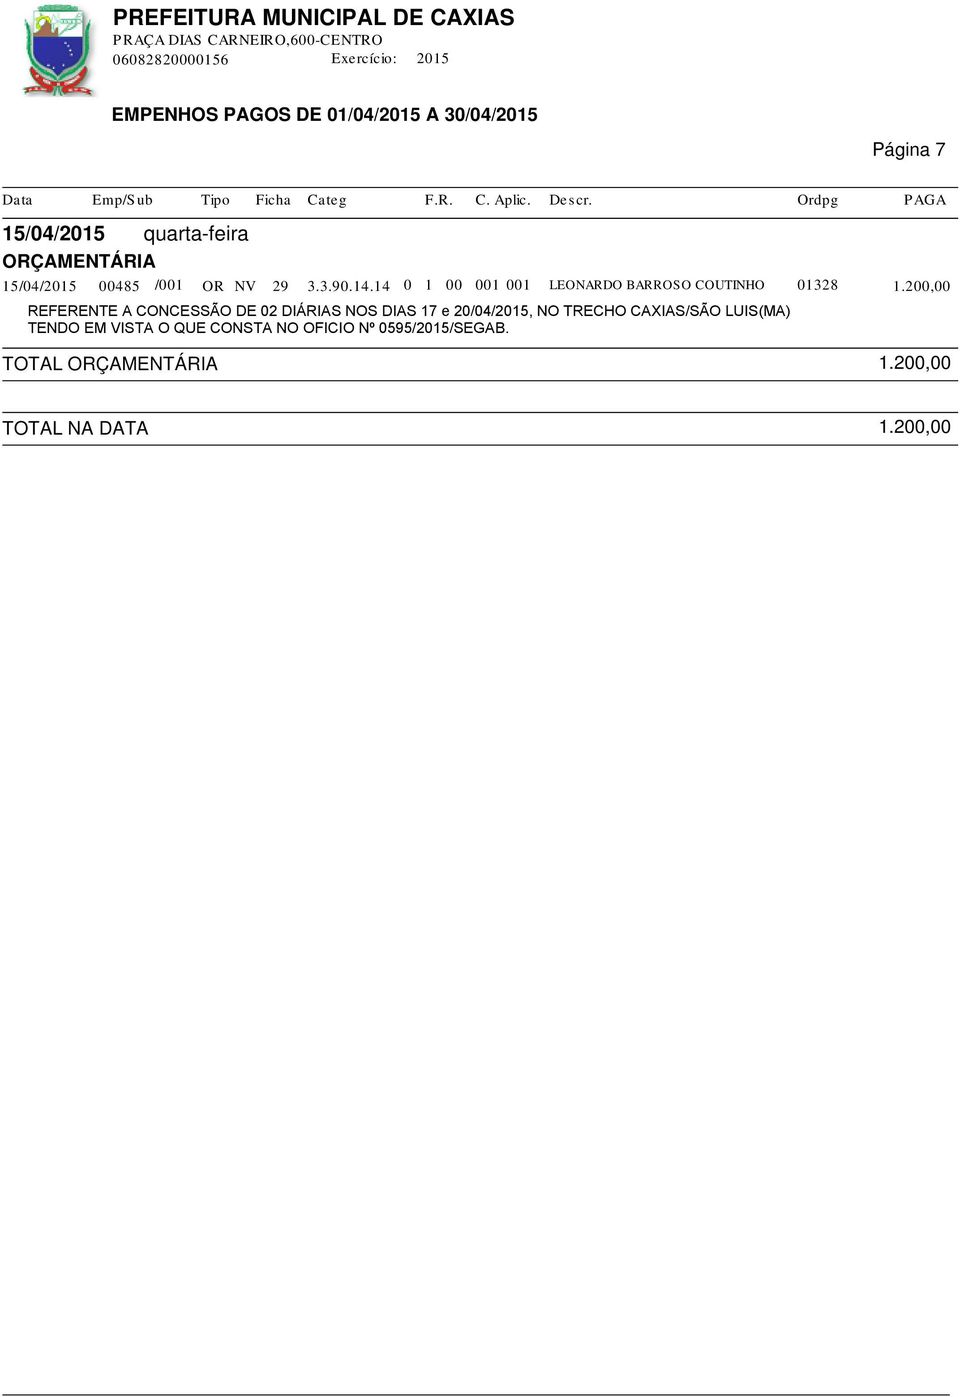 200,00 REFERENTE A CONCESSÃO DE 02 DIÁRIAS NOS DIAS 17 e 20/04/2015, NO